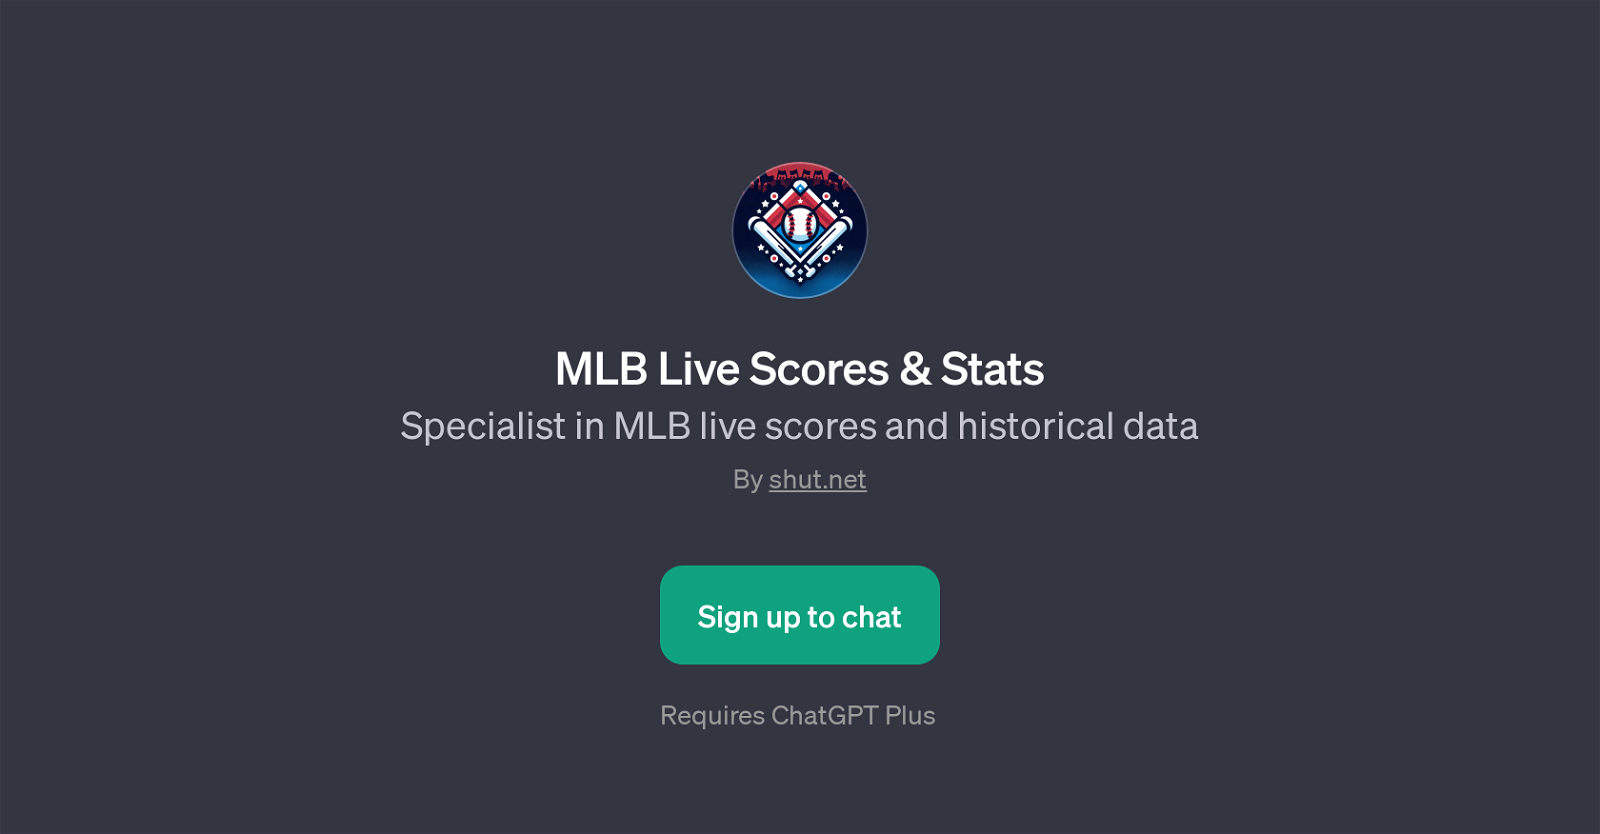 MLB Live Scores & Stats website